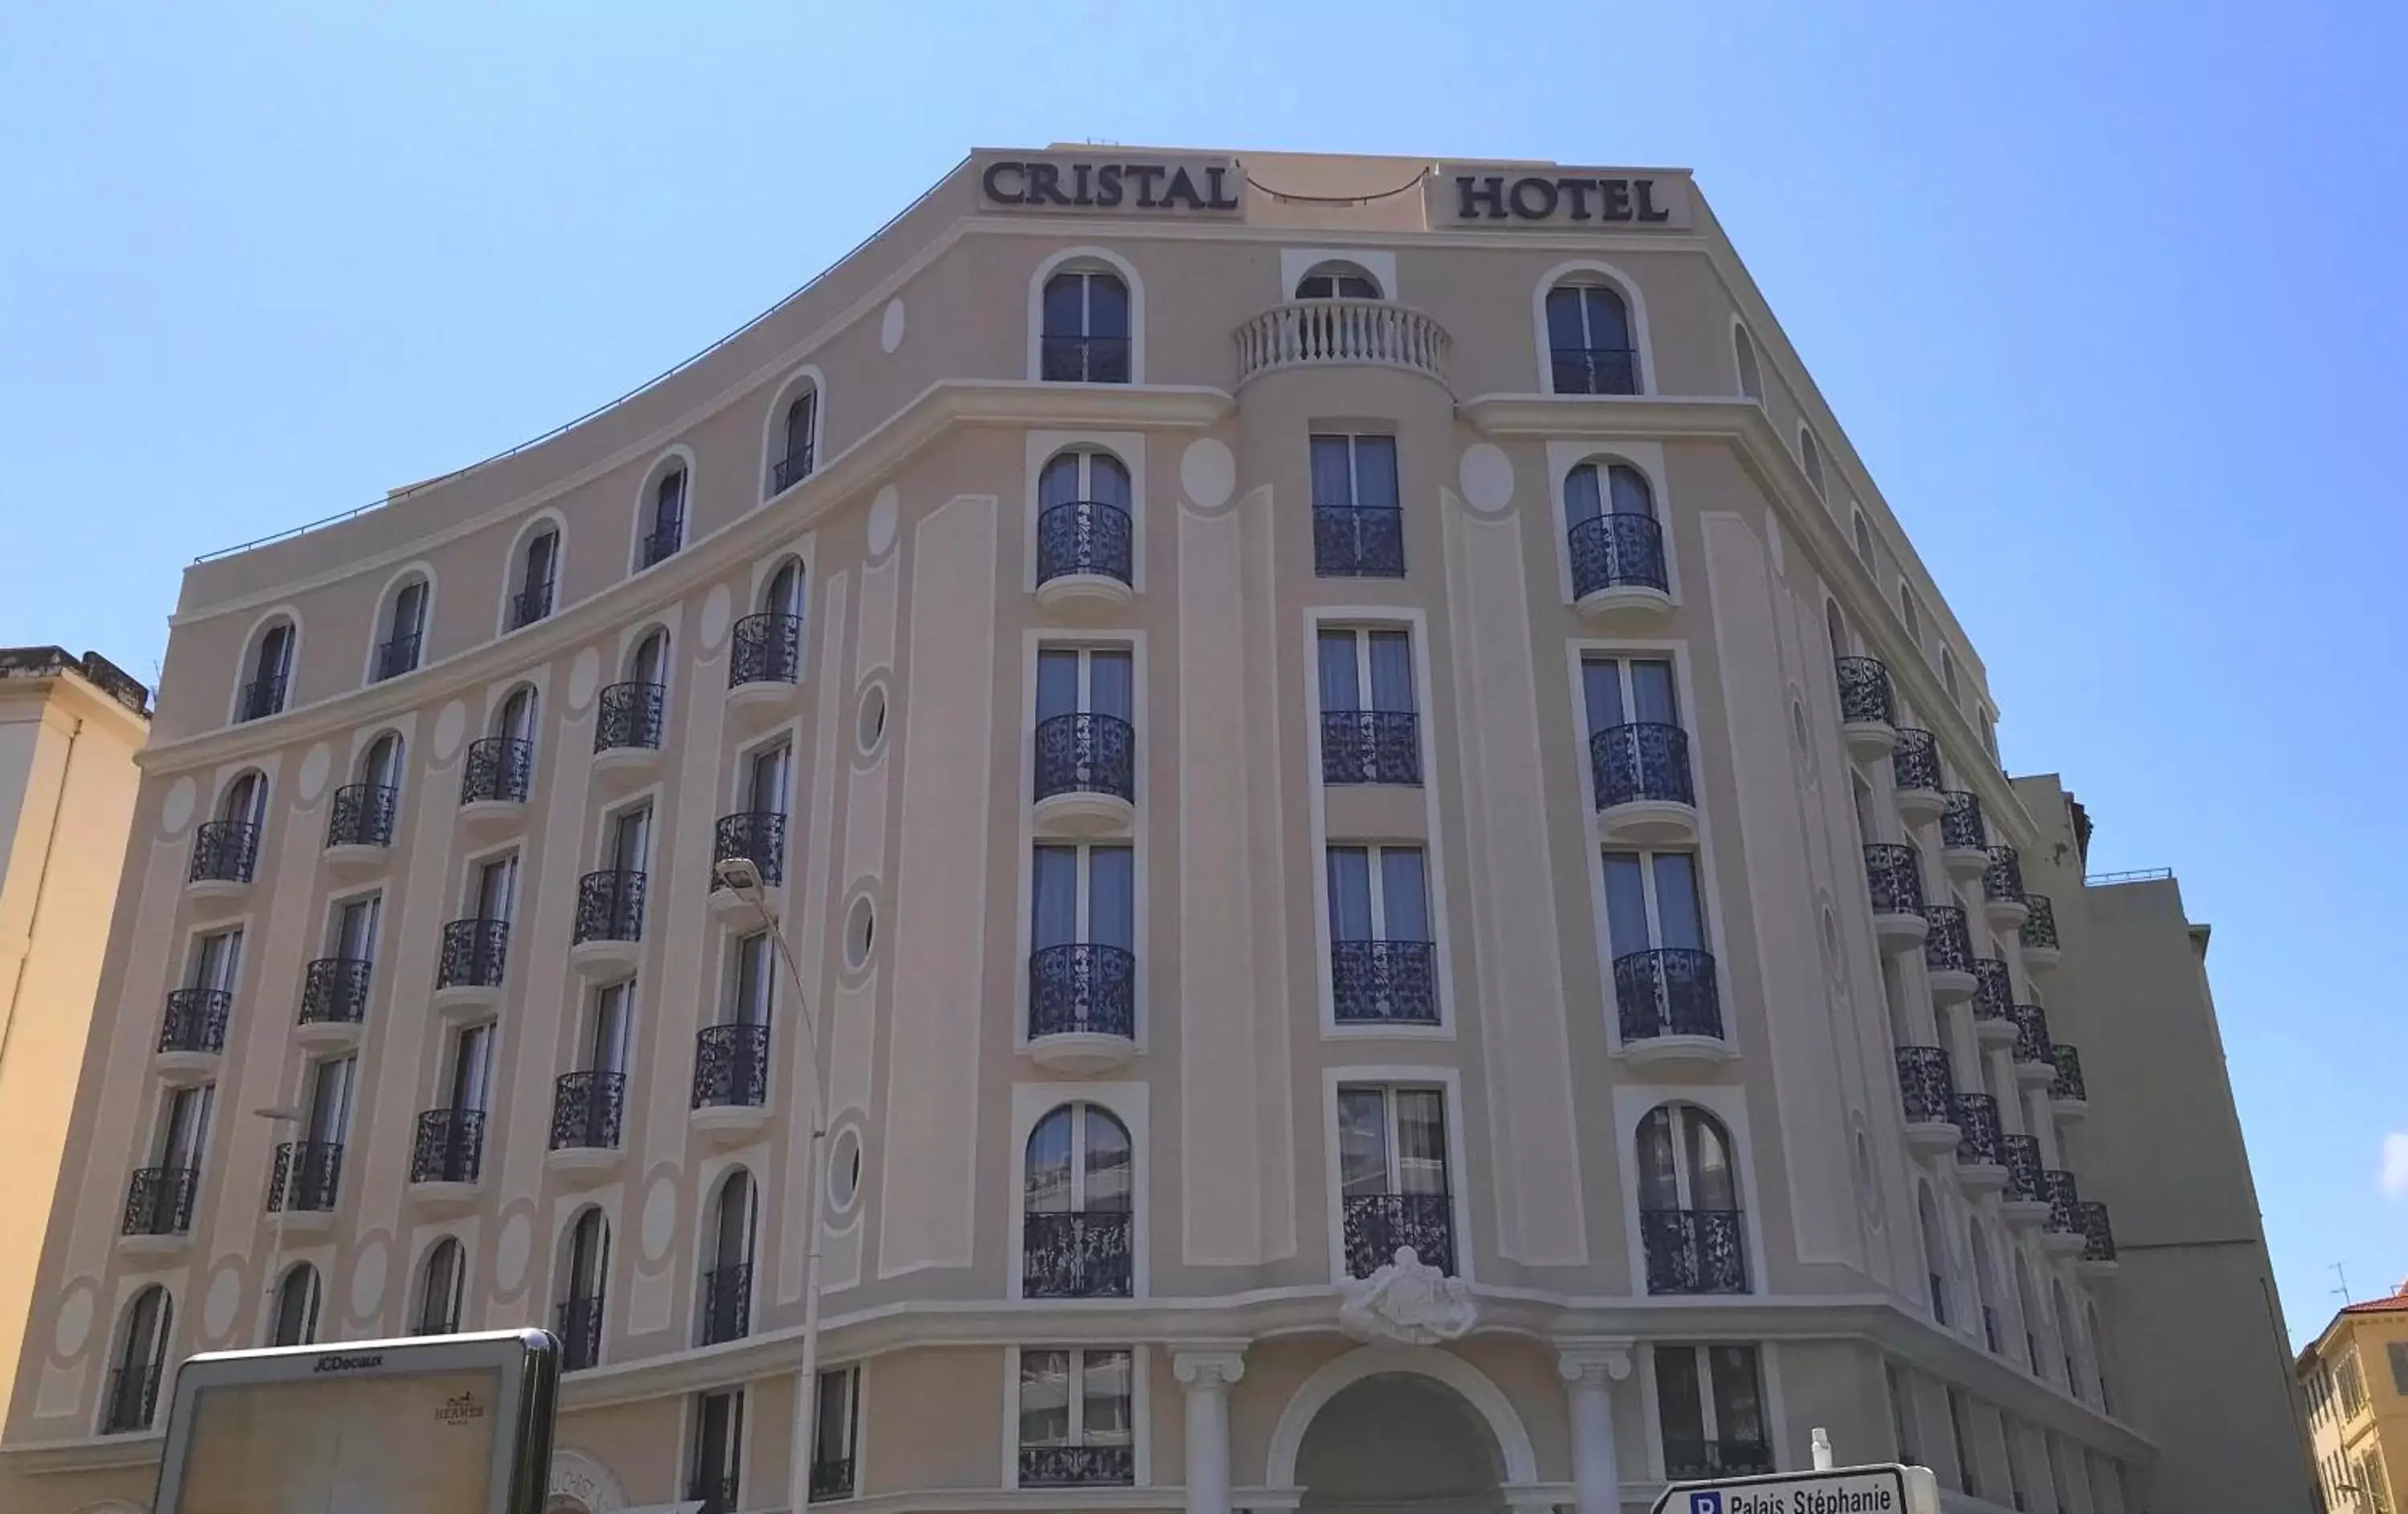 Facade/entrance, Property Building in Cristal Hôtel & Spa